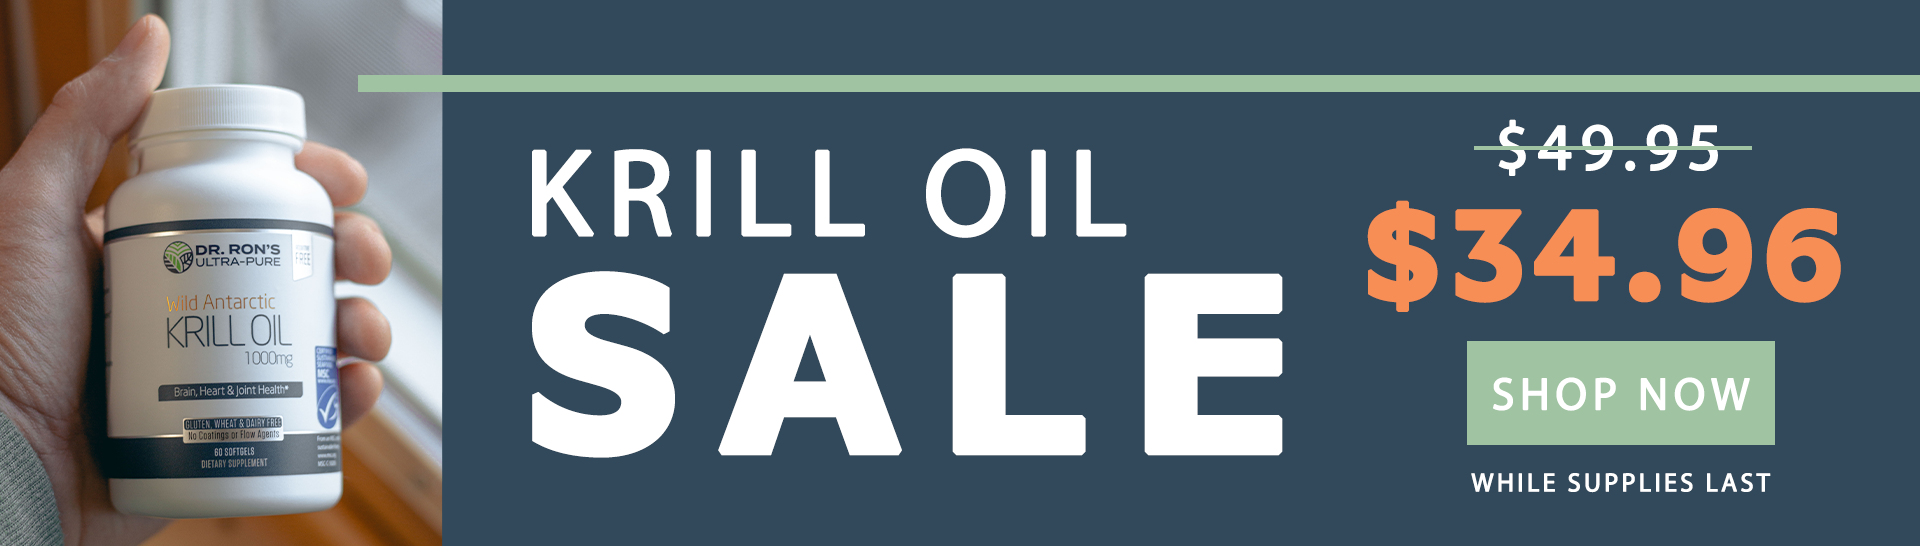 Krill Oil Sale $34.96